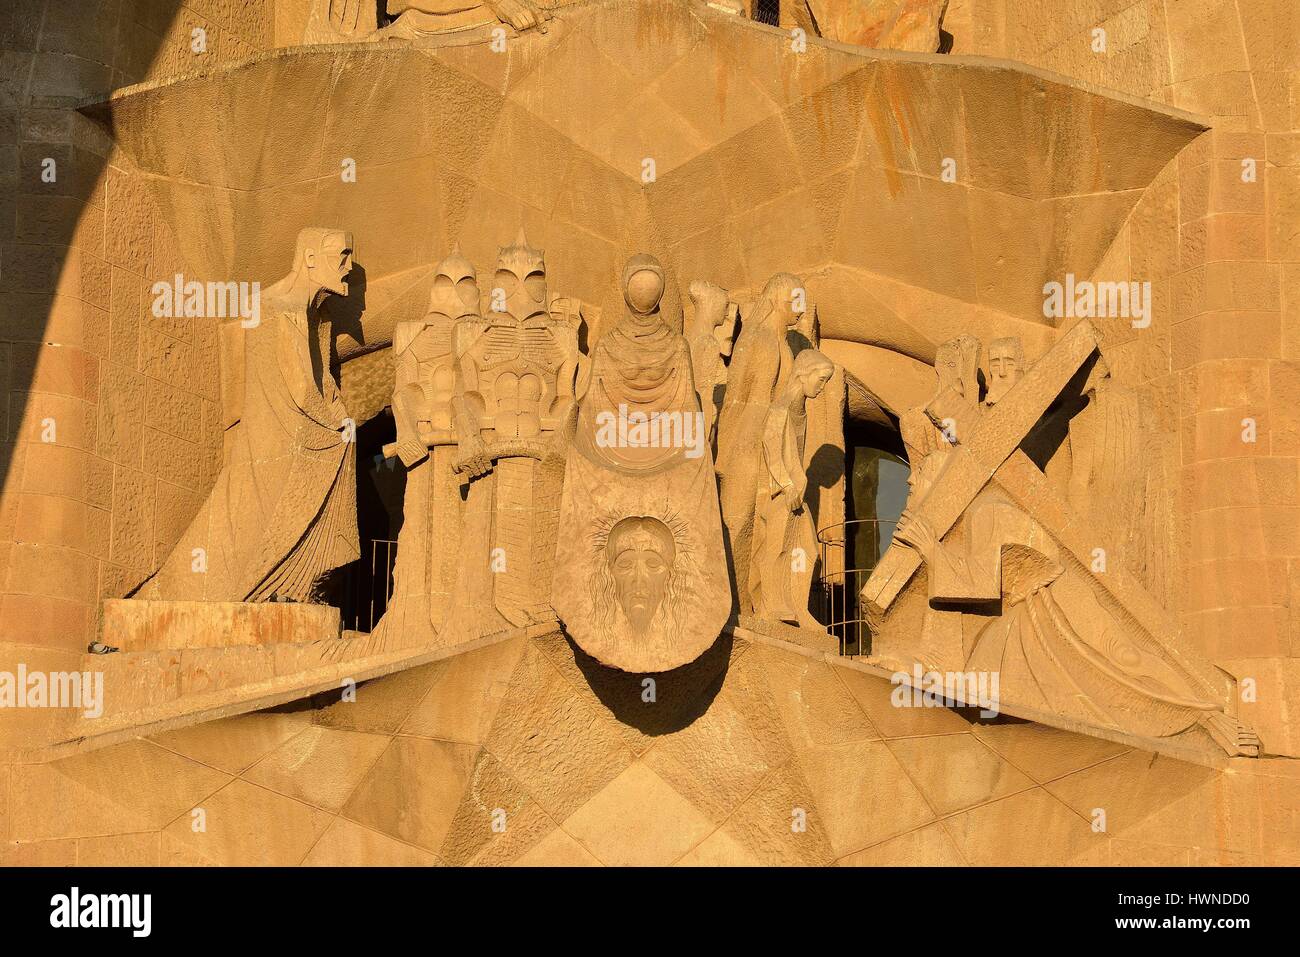 Espagne, Catalogne, Barcelone, Eixample, la Sagrada Familia, la cathédrale par l'architecte Antoni Gaudi, inscrite au Patrimoine Mondial de l'UNESCO, la façade de la passion, une œuvre de sculpteur Catalan Josep Maria Subirachs Banque D'Images